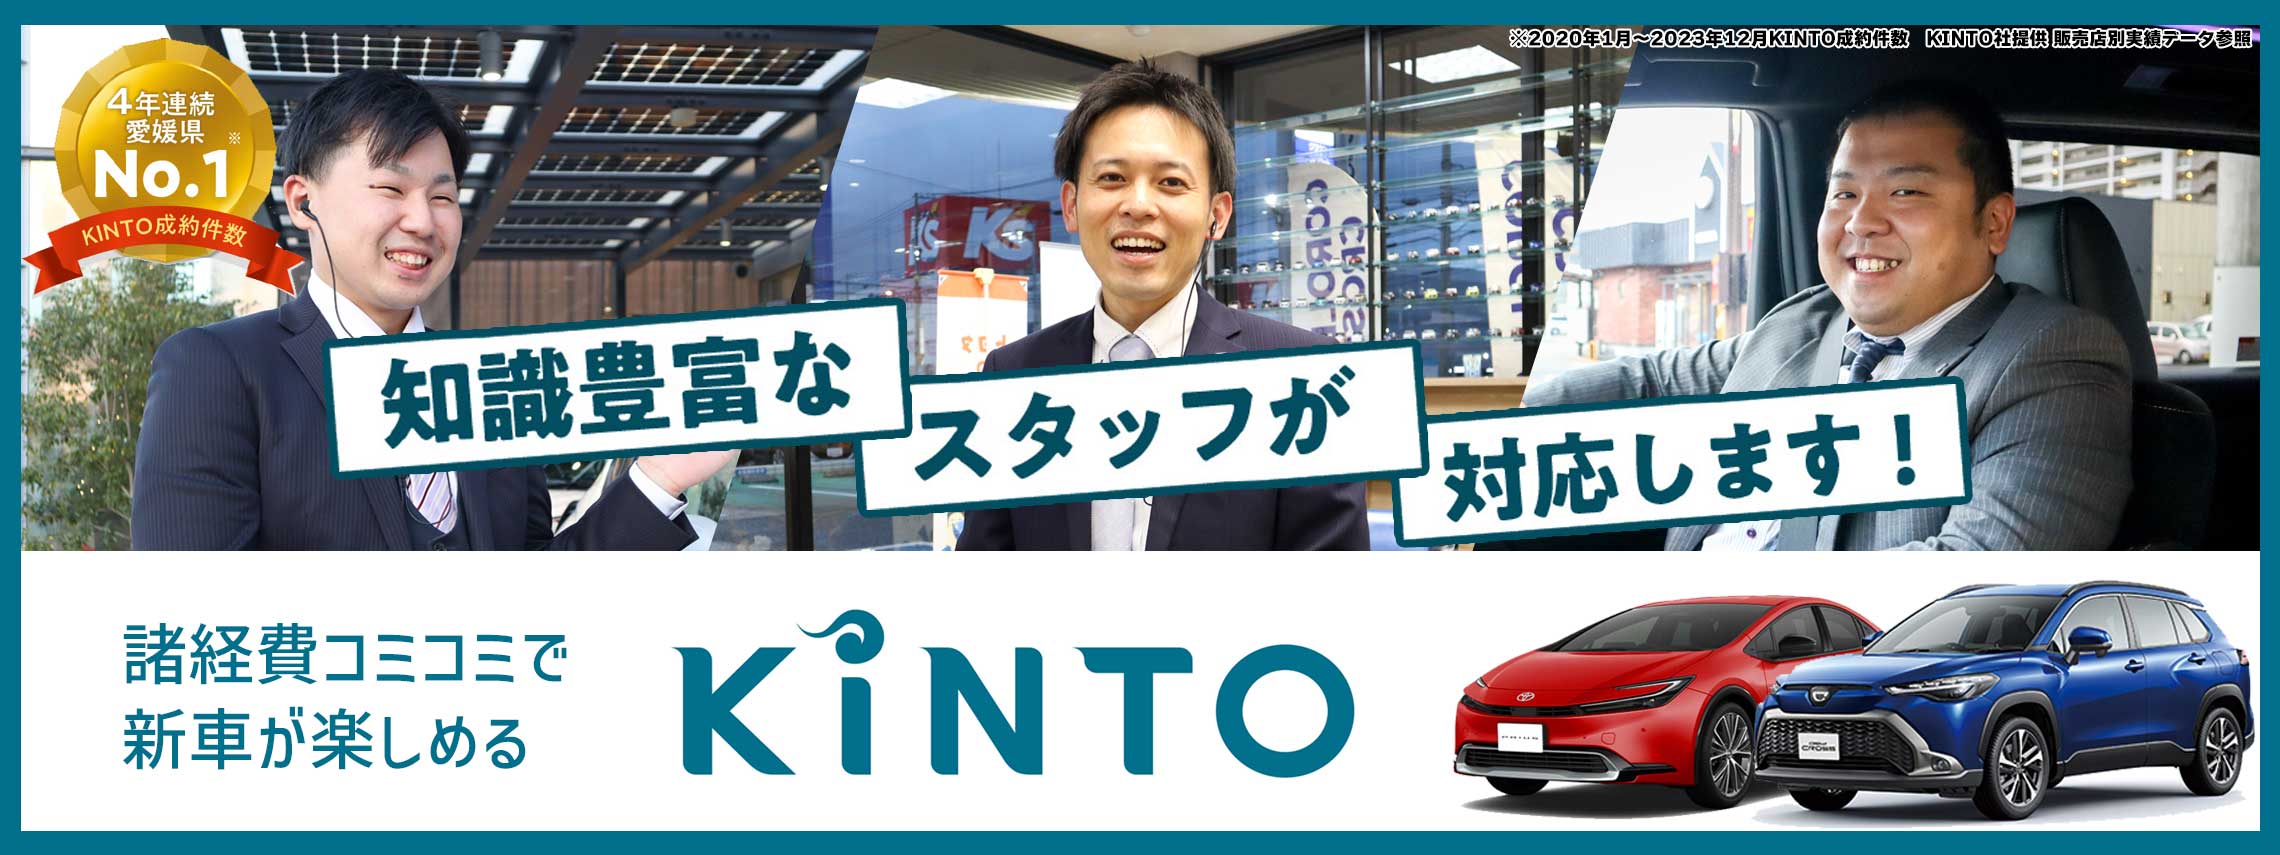 諸経費コミコミで新車が楽しめるKINTO。知識豊富なスタッフが対応します！